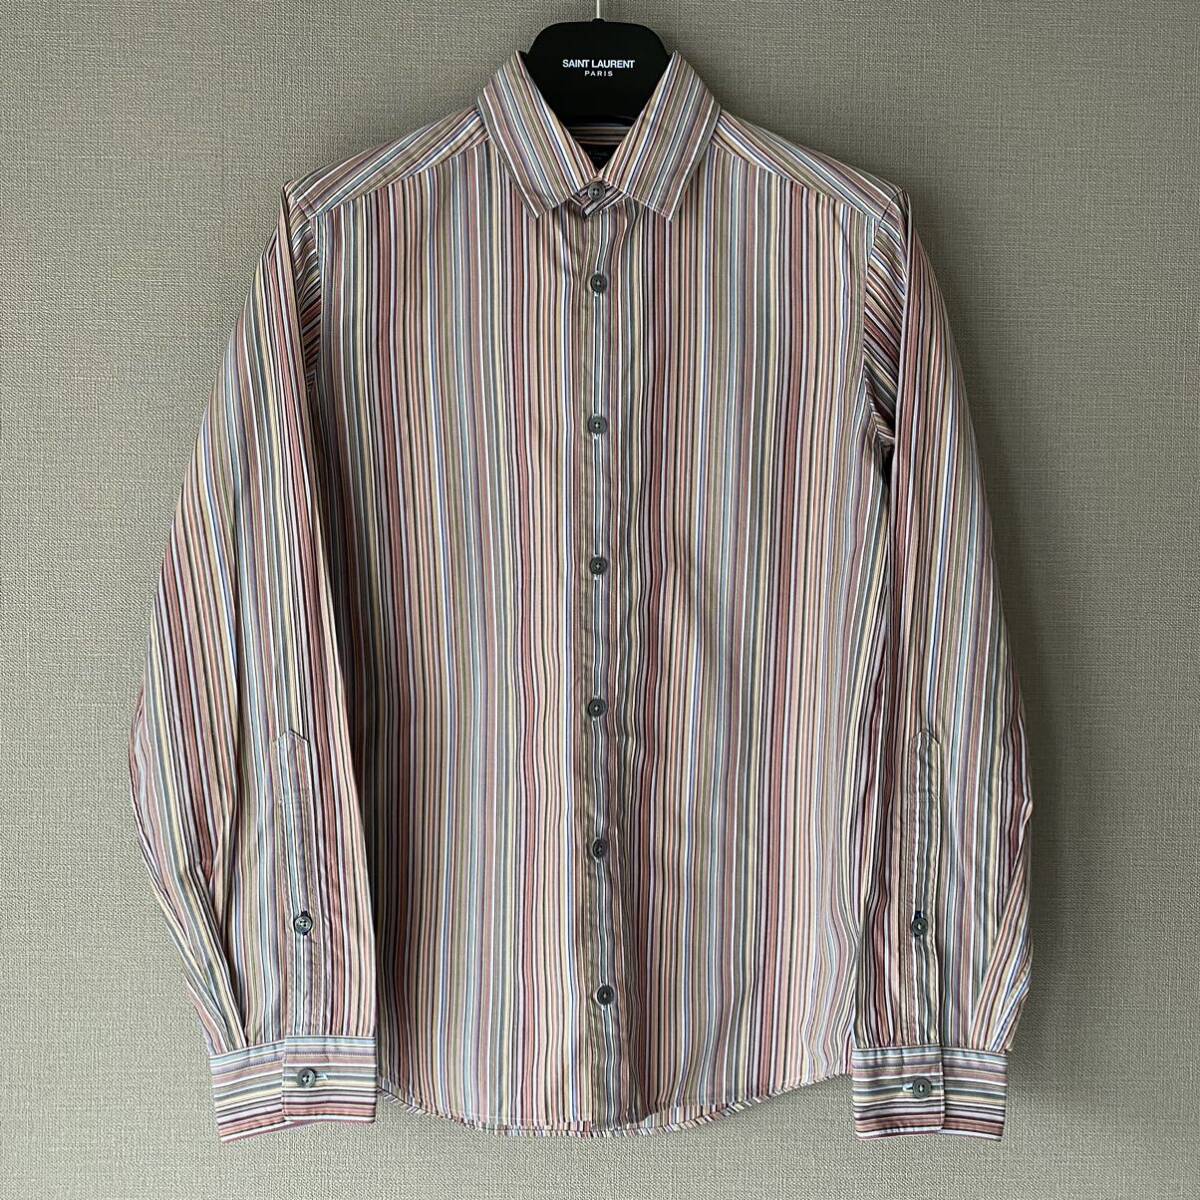 『マルチストライプ』Paul Smith LONDON ポールスミスロンドン 長袖シャツ ドレスシャツ メンズ Sサイズ マルチカラー 日本製 コットン素材_画像3